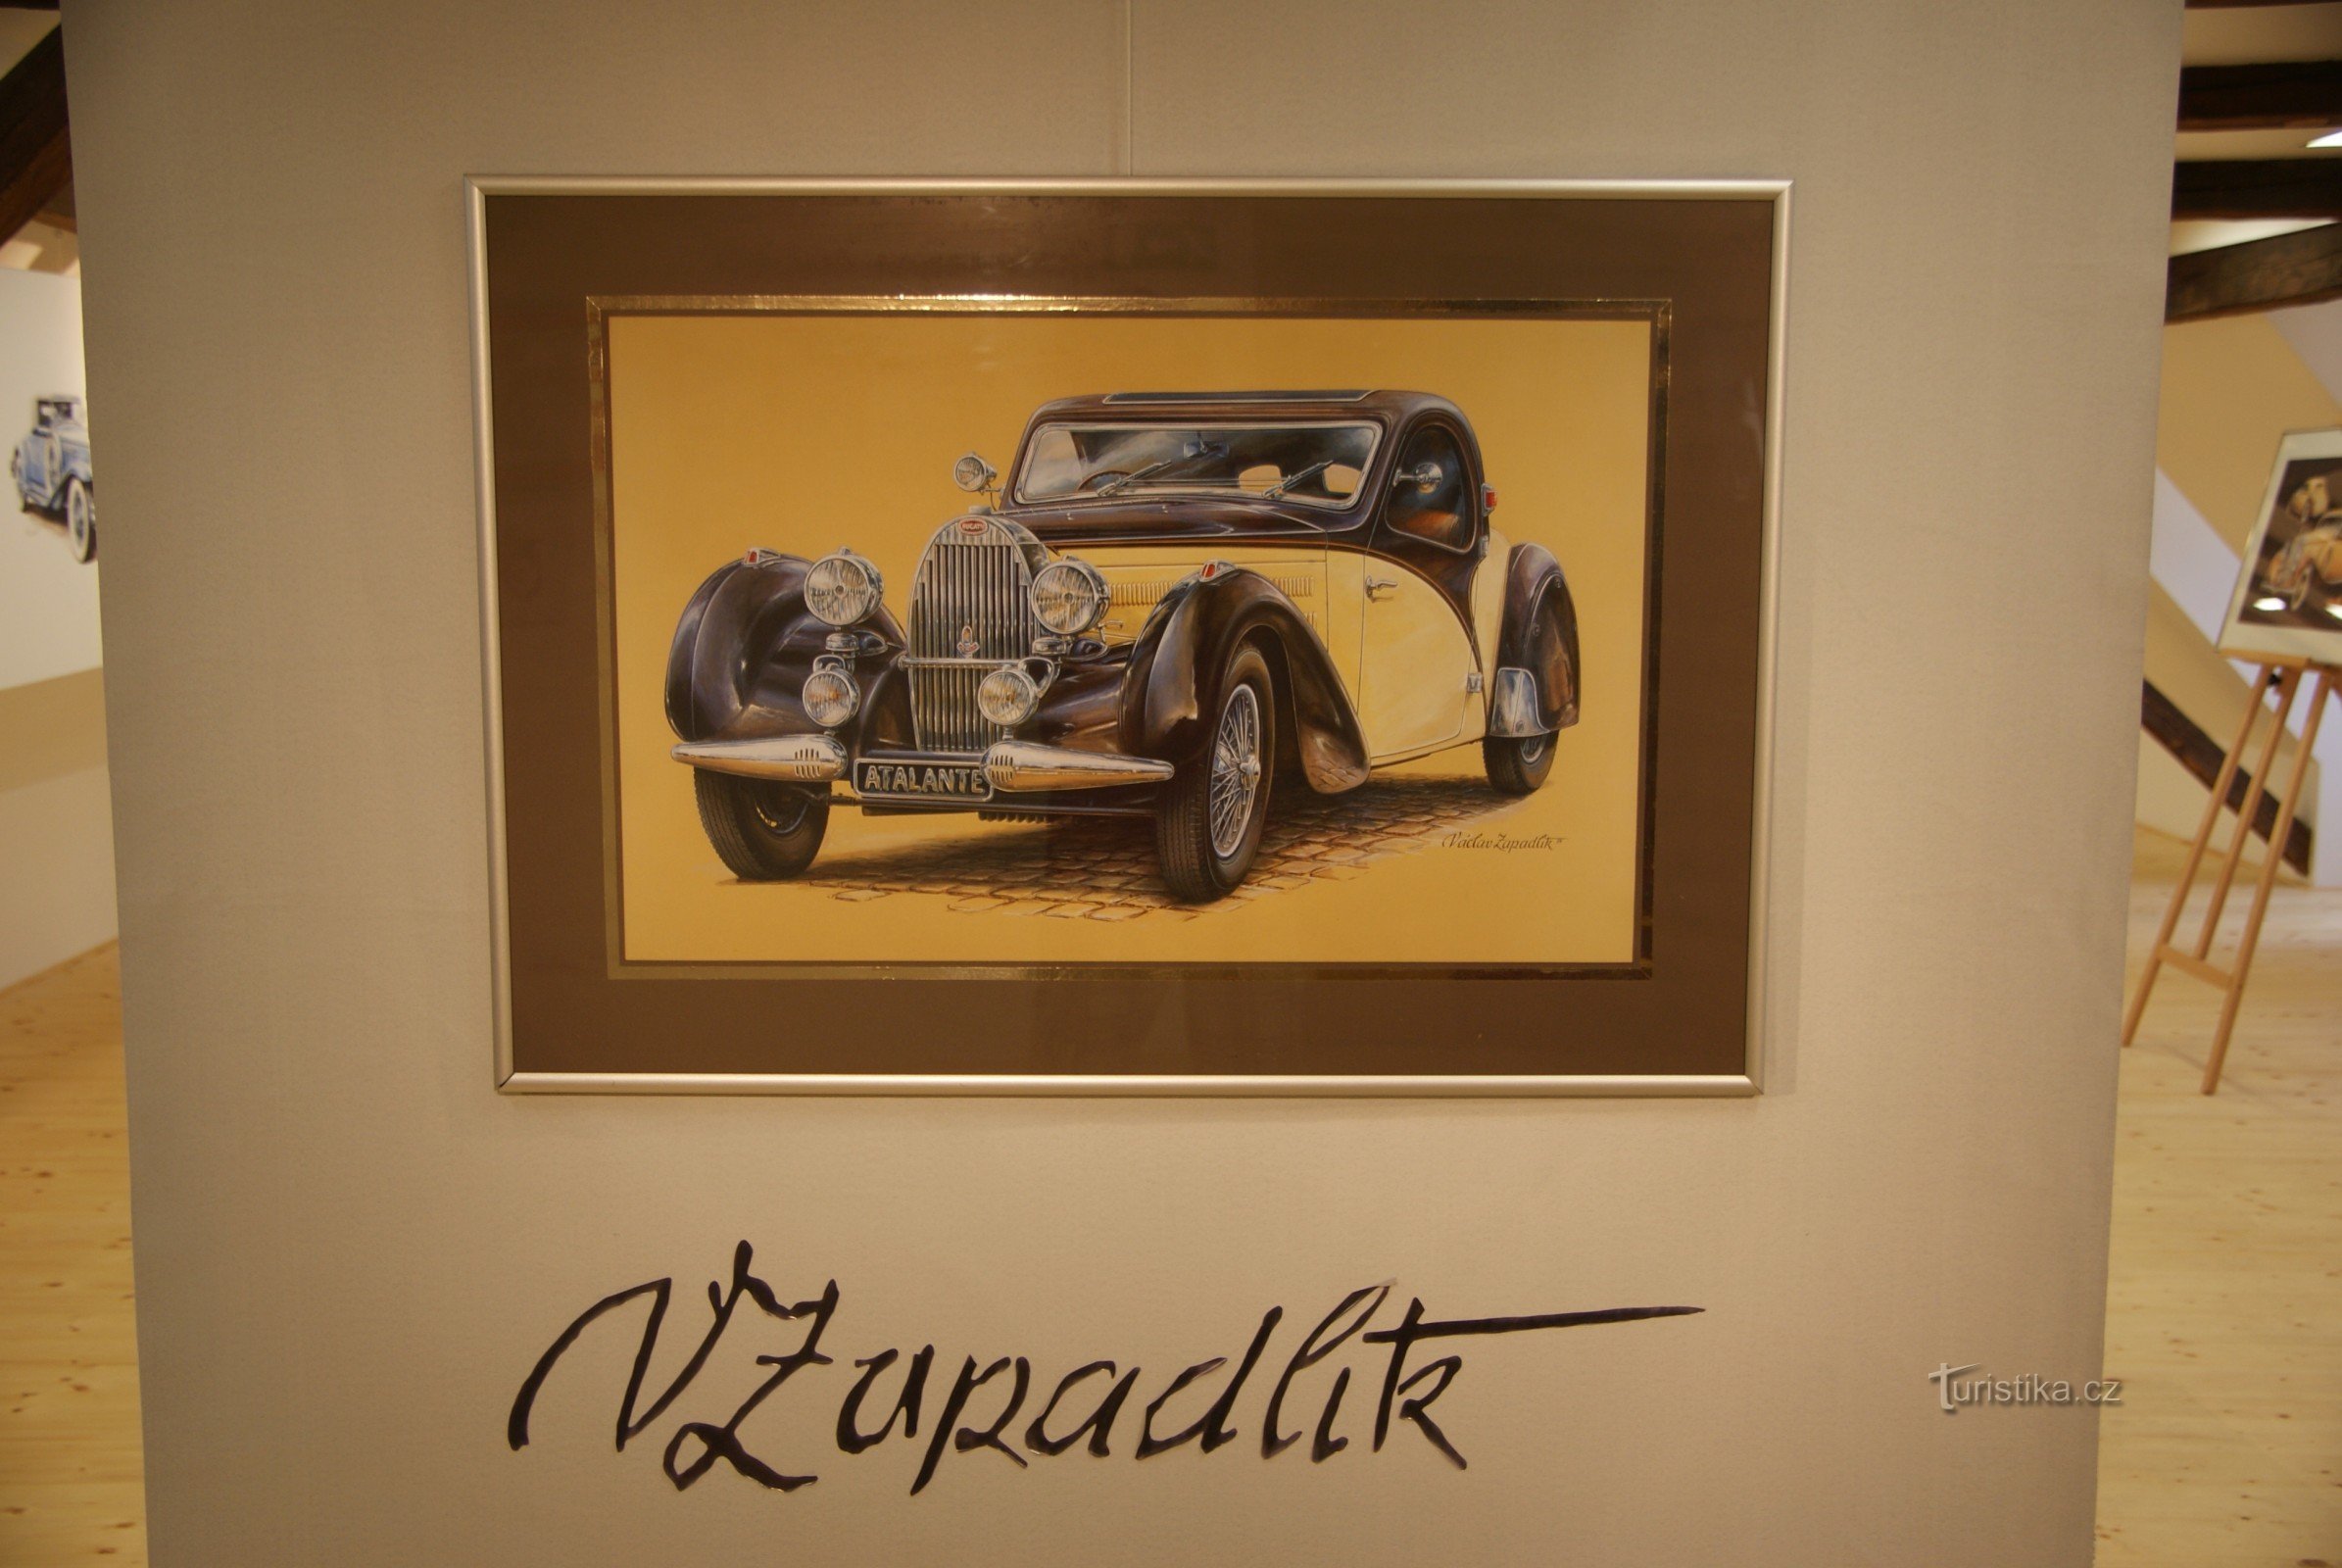 triển lãm "Hình ảnh thế giới ô tô" của Václav Zapadlík